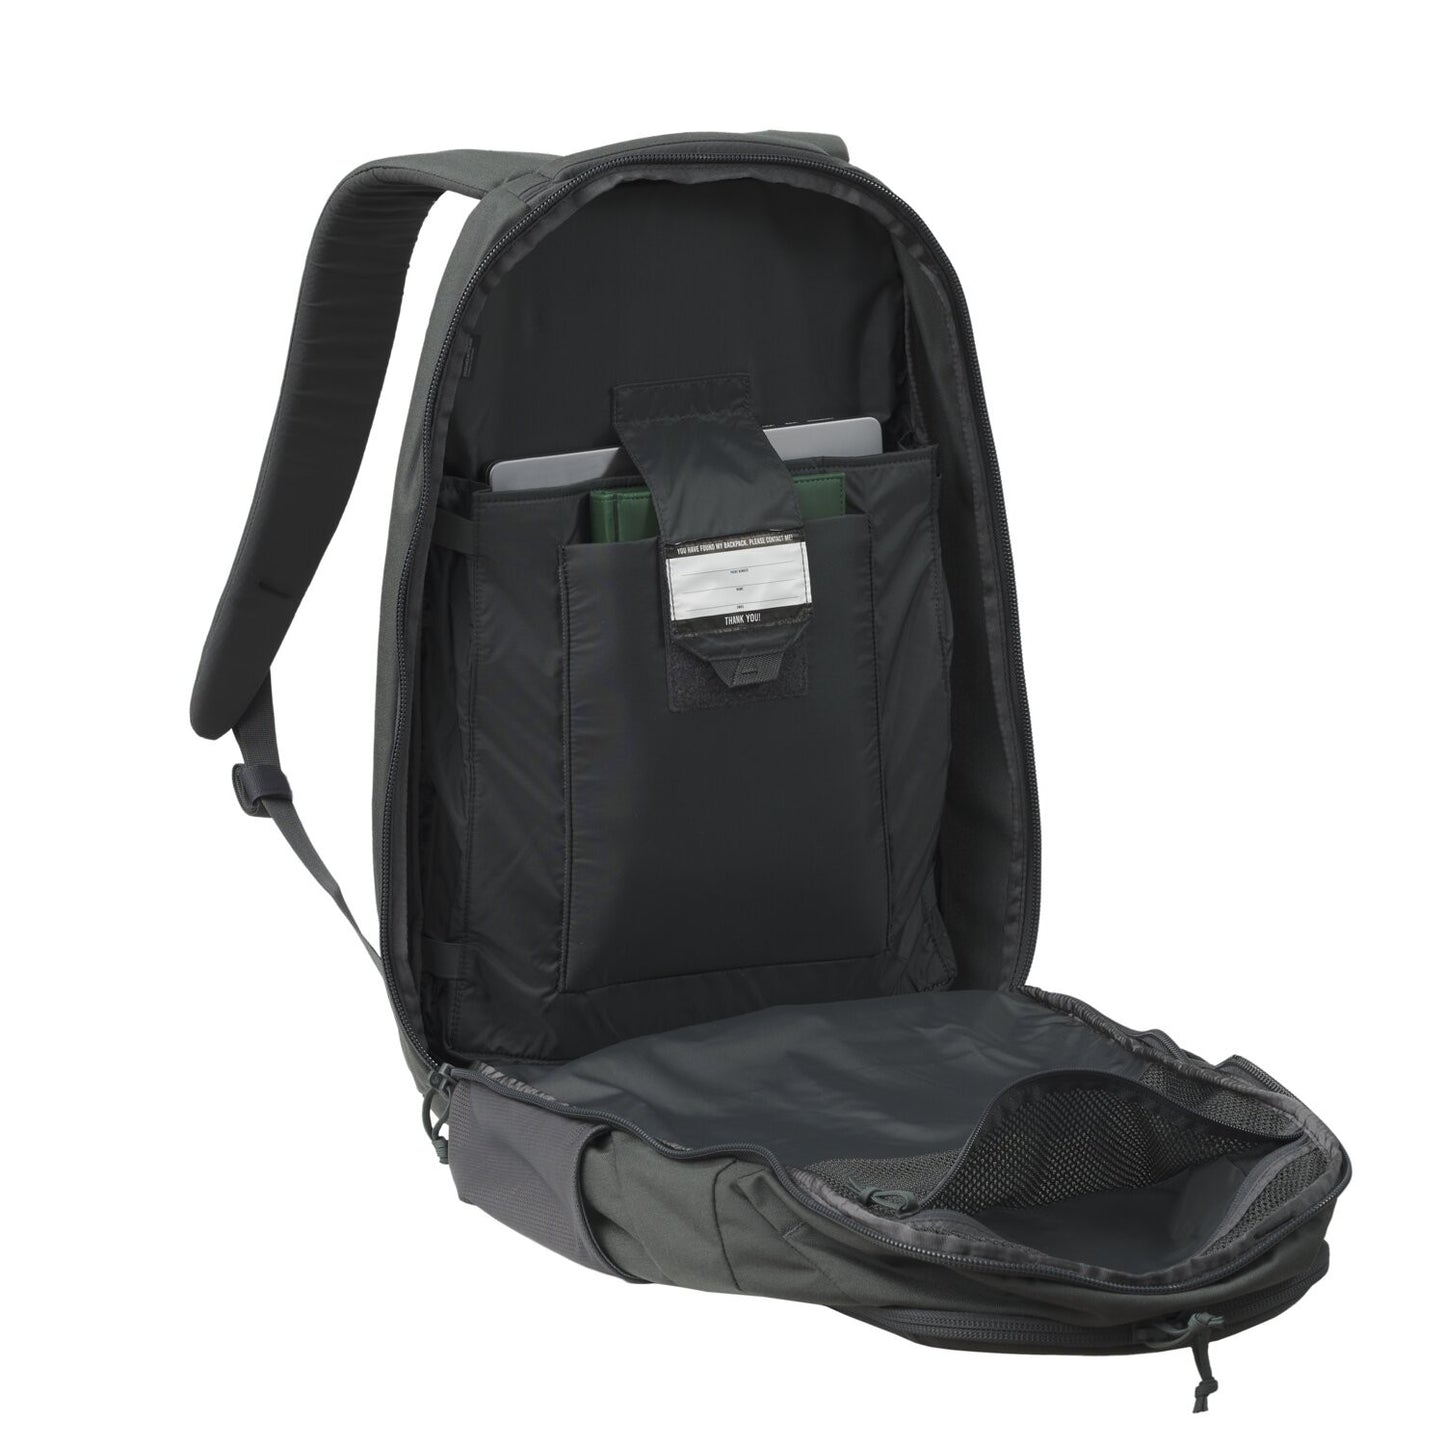 Helikon Military-Grade Traveler Backpack